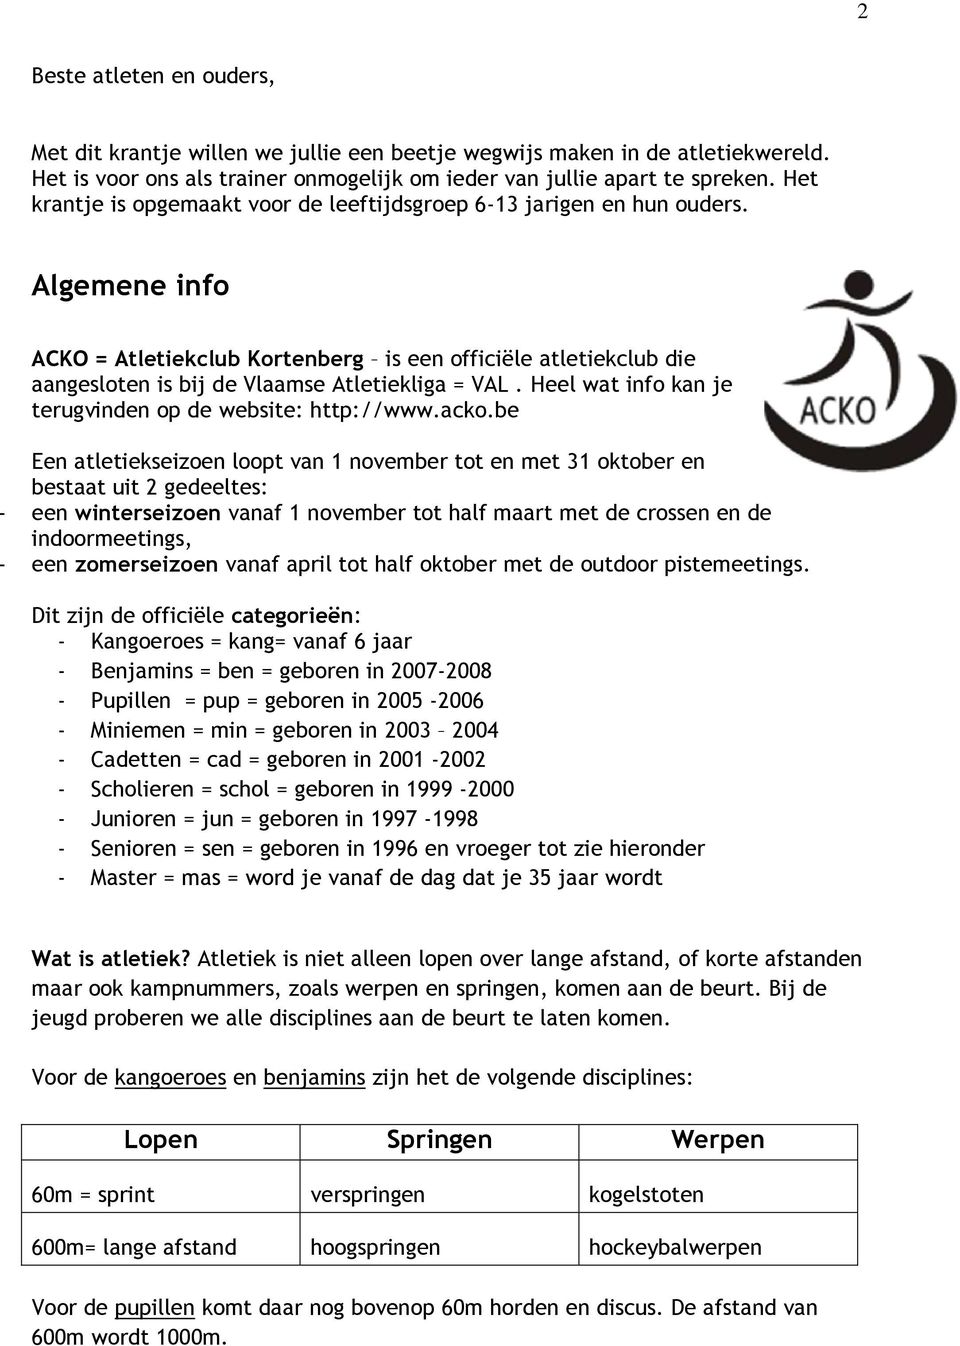 Algemene info ACKO = Atletiekclub Kortenberg is een officiële atletiekclub die aangesloten is bij de Vlaamse Atletiekliga = VAL. Heel wat info kan je terugvinden op de website: http://www.acko.